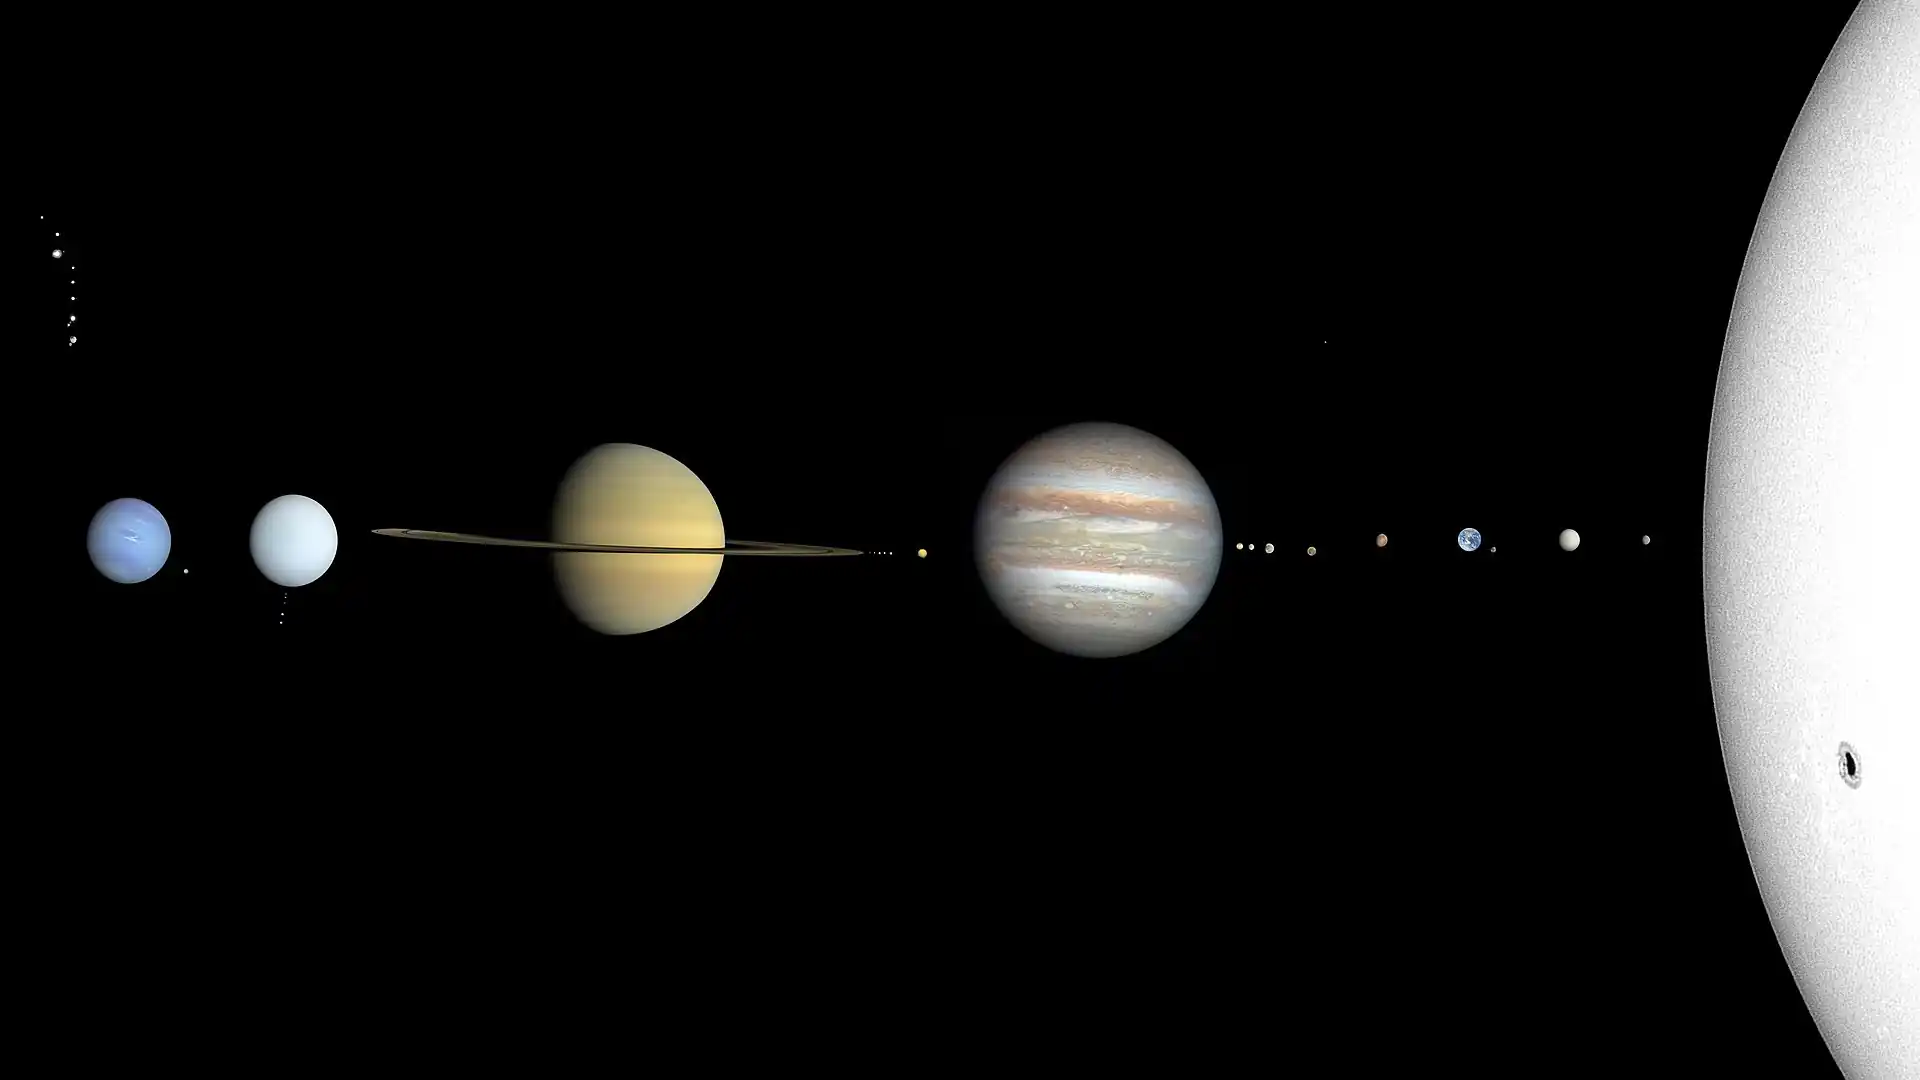 Nihayet... Güneş Sistemi'nin gerçek rengi! Cüce gezegenler sağdan sola doğru dört ana sınıflandırma ile yukarıdan aşağıya doğru yarıçaplarına göre sıralanmıştır: Asteroid kuşağı (Ceres, Jovian uydularının üstünde), Kuiper kuşağı (Orcus, Quaoar, Makemake, Haumea, Pluto), dağınık disk (Gonggong, Eris) ve ayrık nesneler (Sedna). Cüceler uydulardan daha büyük ölçektedir. Gezegen ve ay kredileri: Kullanıcı:MotloAstro (Güneş); NASA (Merkür, Venüs, Dünya, Ay, Jüpiter, Satürn, Uranüs, Neptün, Io, Europa (renk düzeltmesi ile), Ganymede, Callisto (Kevin M. Gill), Mimas, Enceladus, Tethys, Dione, Rhea, Titan, Miranda, Ariel, Umbriel, Titania, Oberon, Triton); ISRO / ISSDC / Justin Cowart (Mars) Cüce gezegenler + uydular kredi: NASA ve ESA